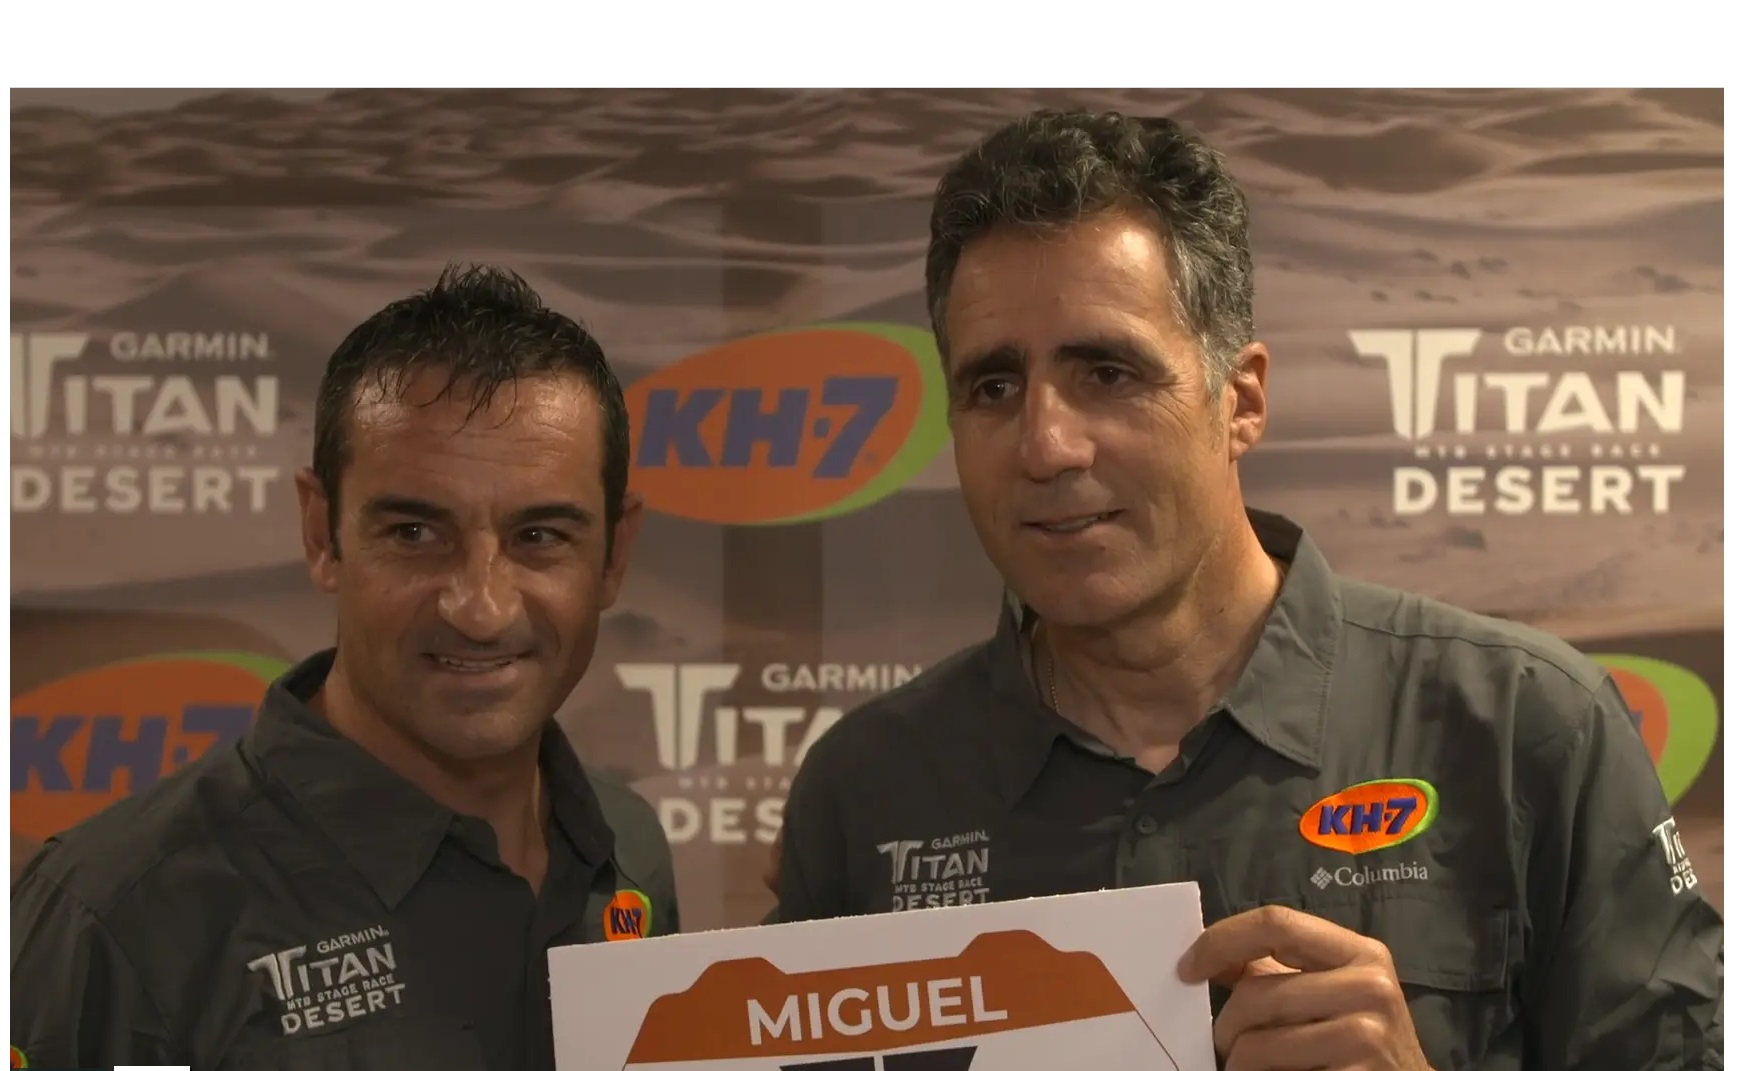 Regreso , Miguel Indurain , competición, kh7, Titan, programapublicidad